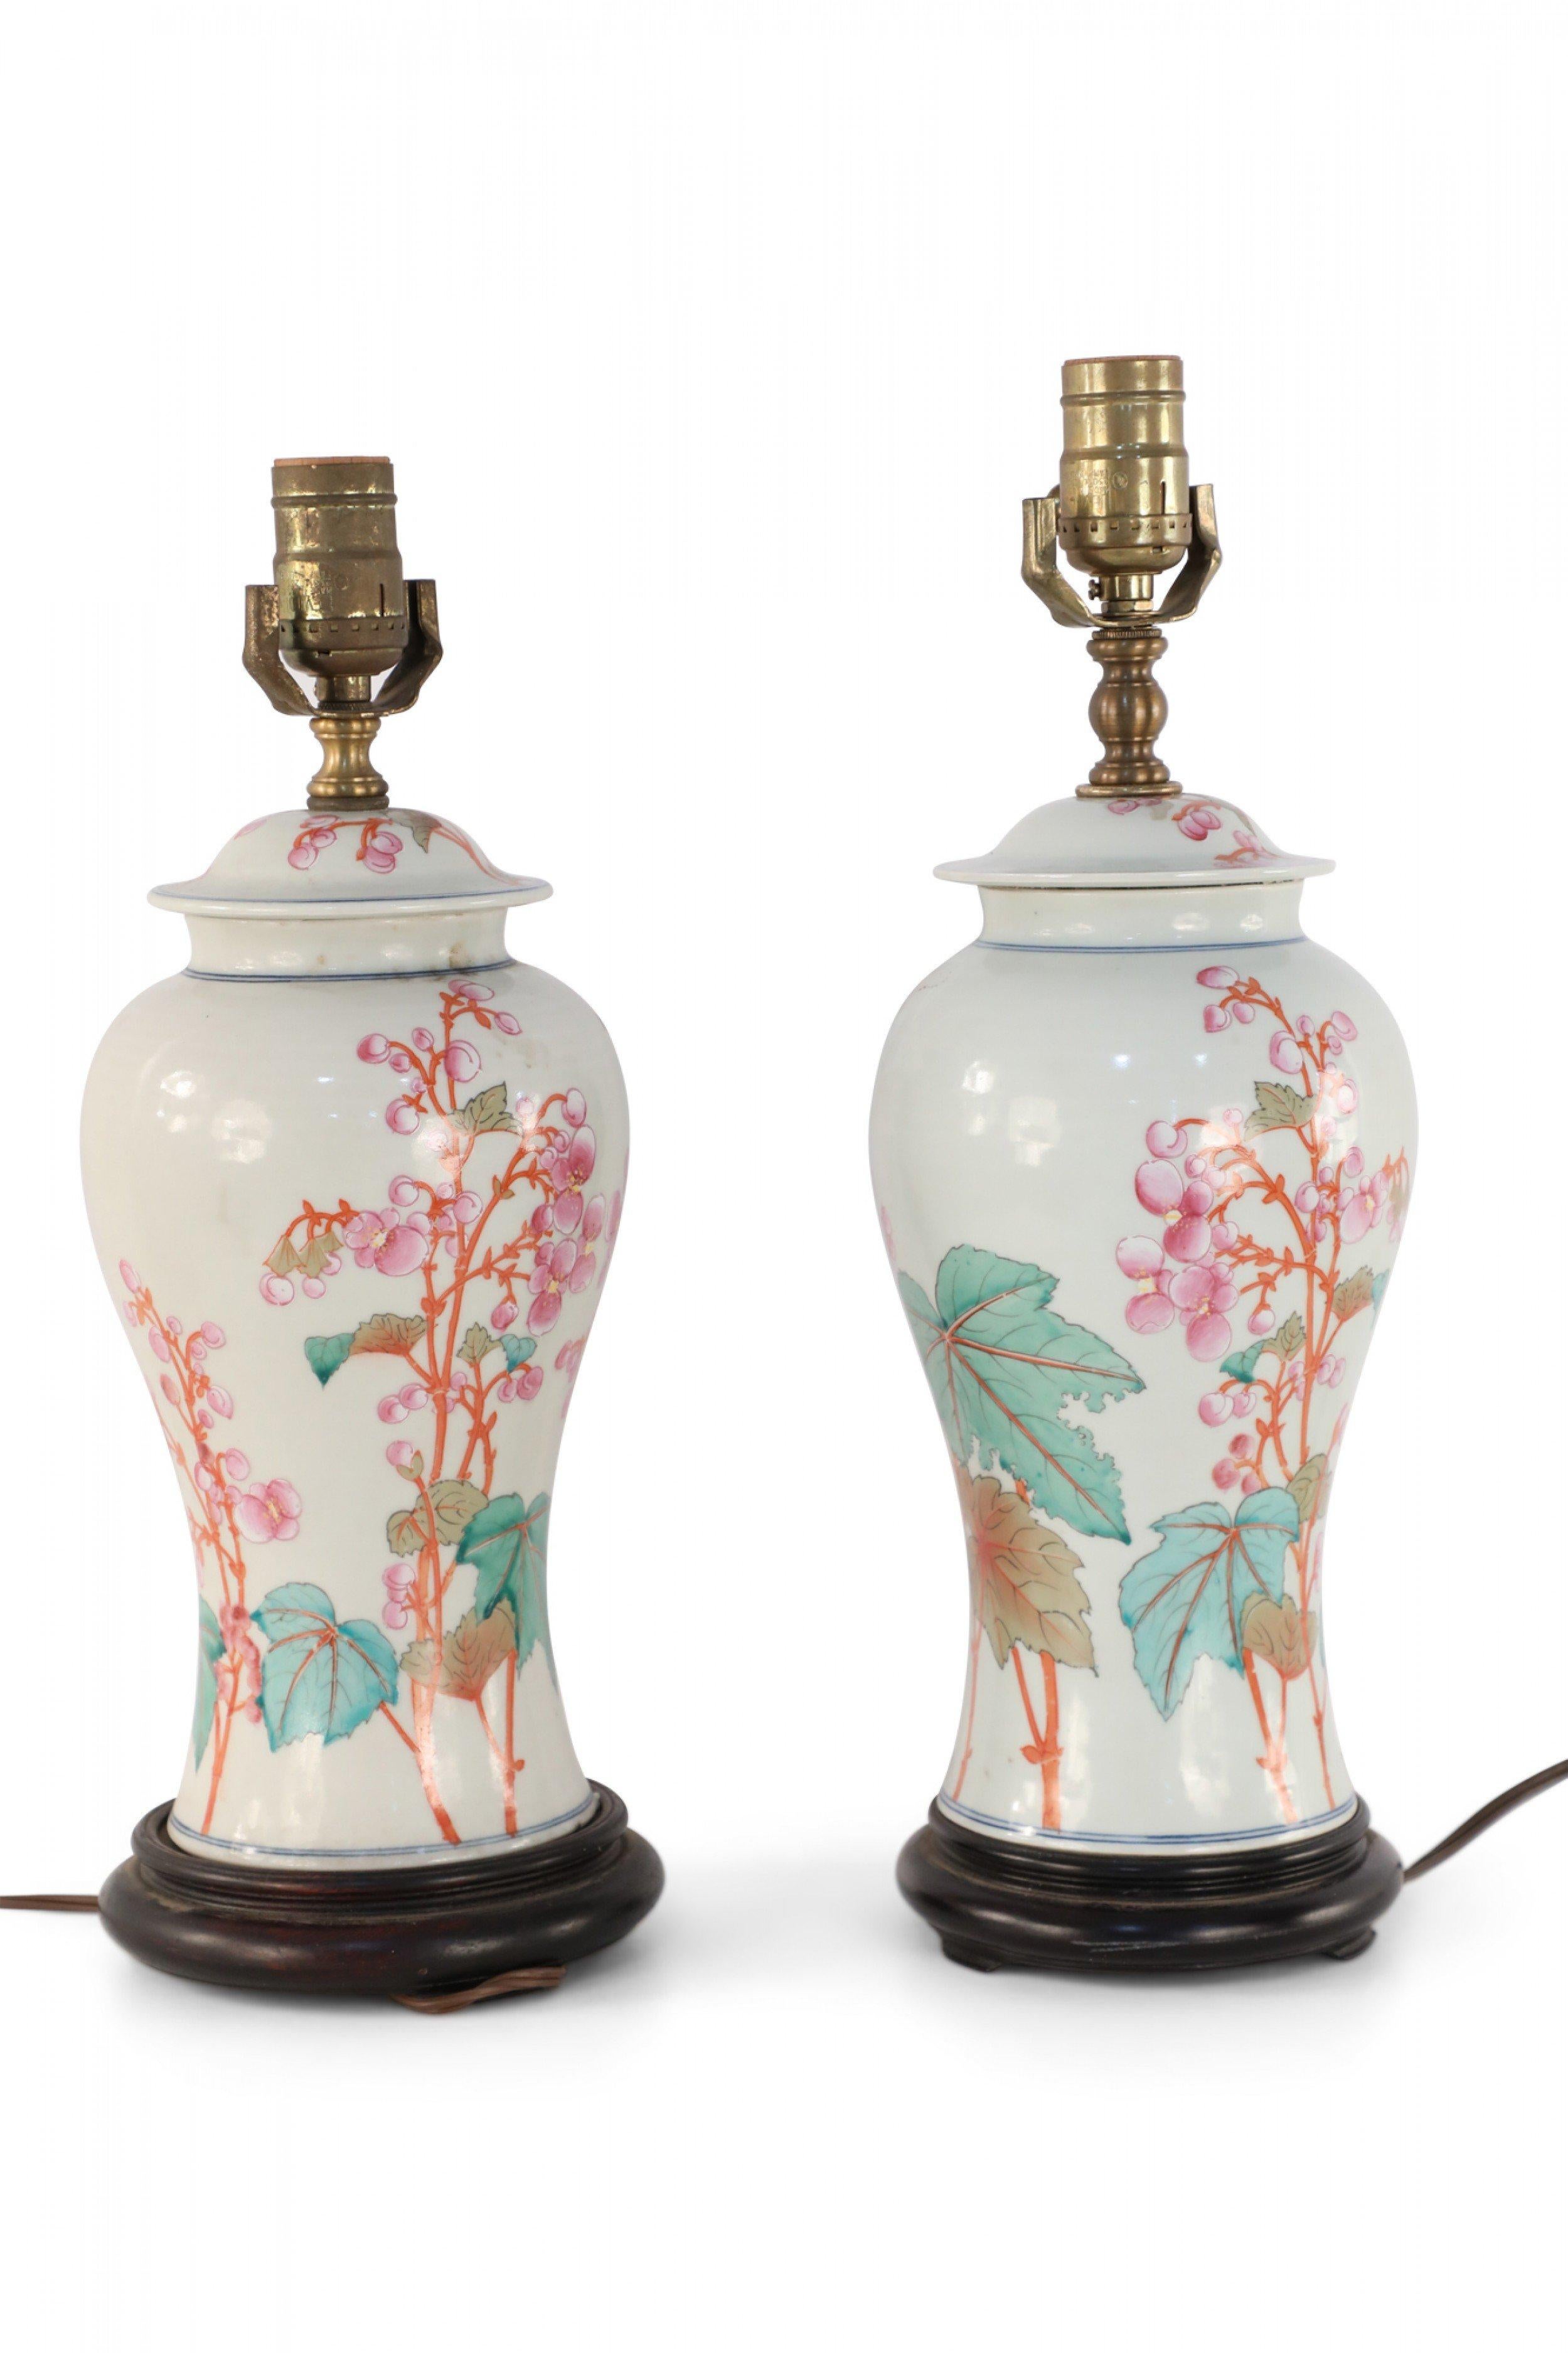 Paire de lampes de table similaires en porcelaine chinoise faites de vases en forme d'urne blanc cassé avec des fleurs roses, orange et vertes, des baies, des feuilles et des dragons, avec des bases en bois et des ferrures en laiton (les lampes